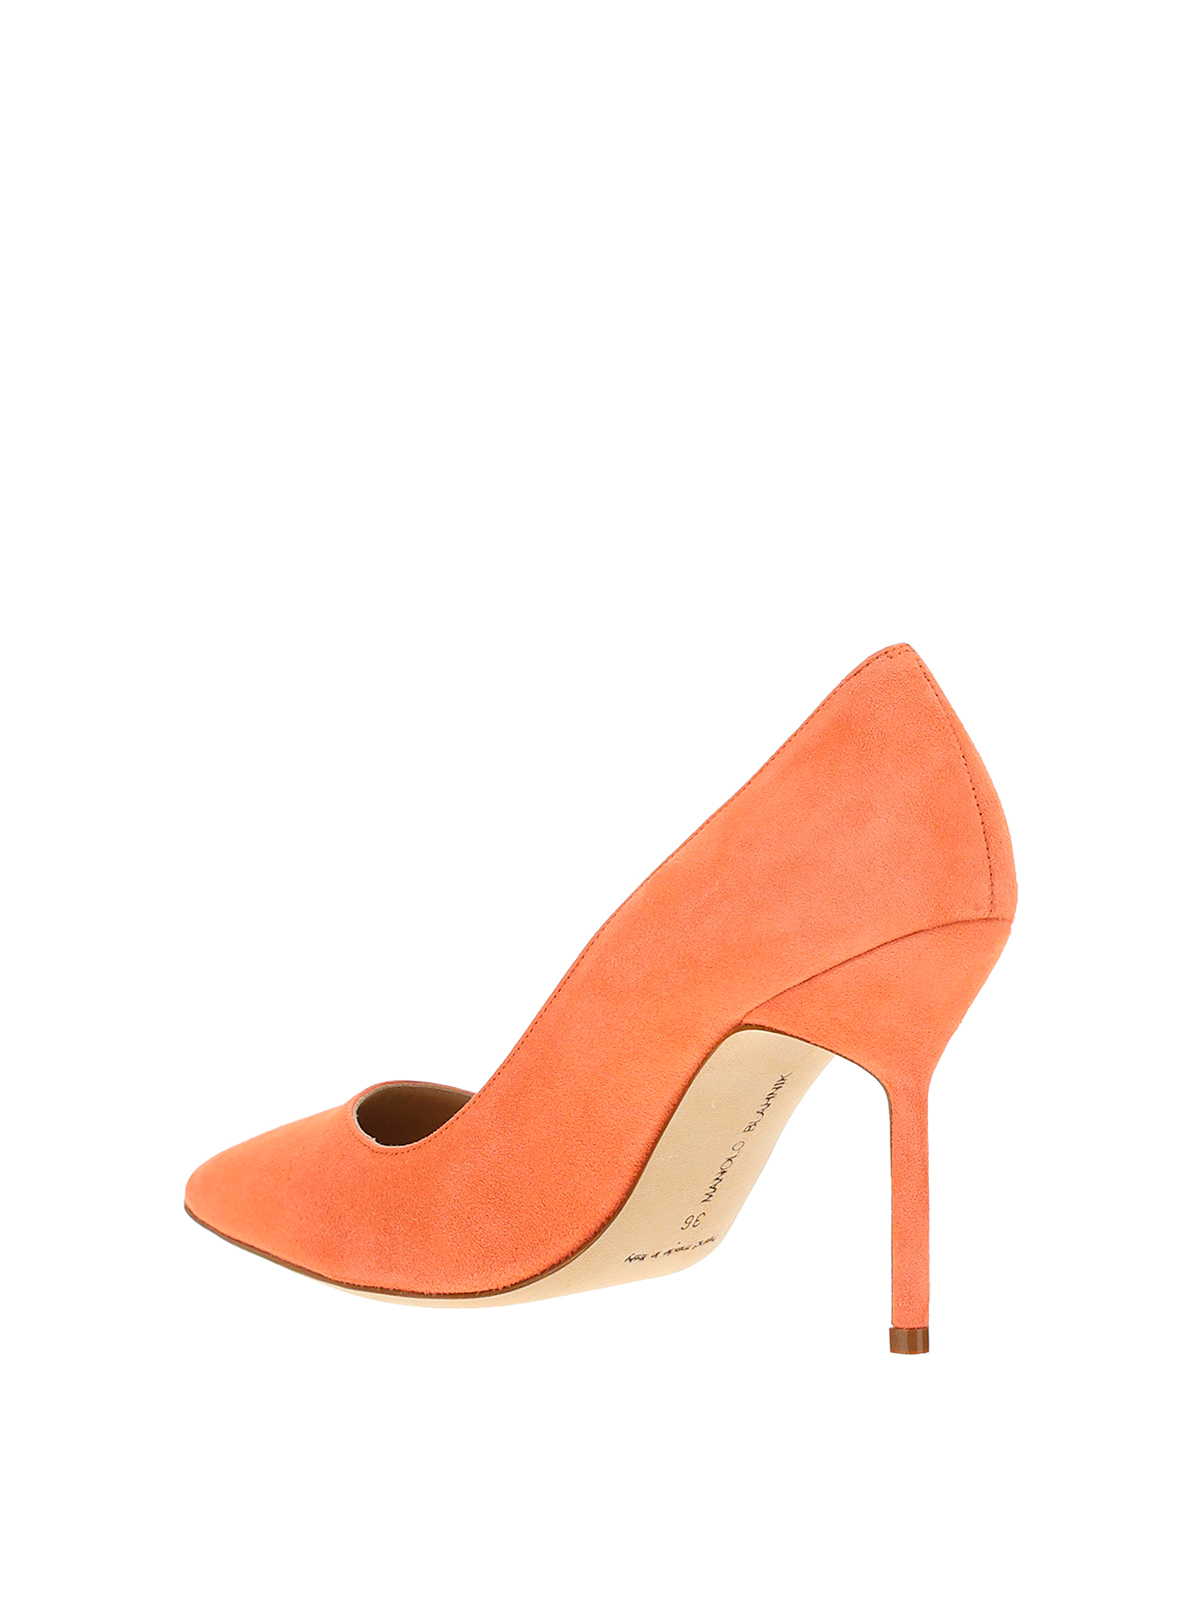 Zapatos de salón Manolo Blahnik - Zapatos Salón - Naranja Claro - 9XX04168709